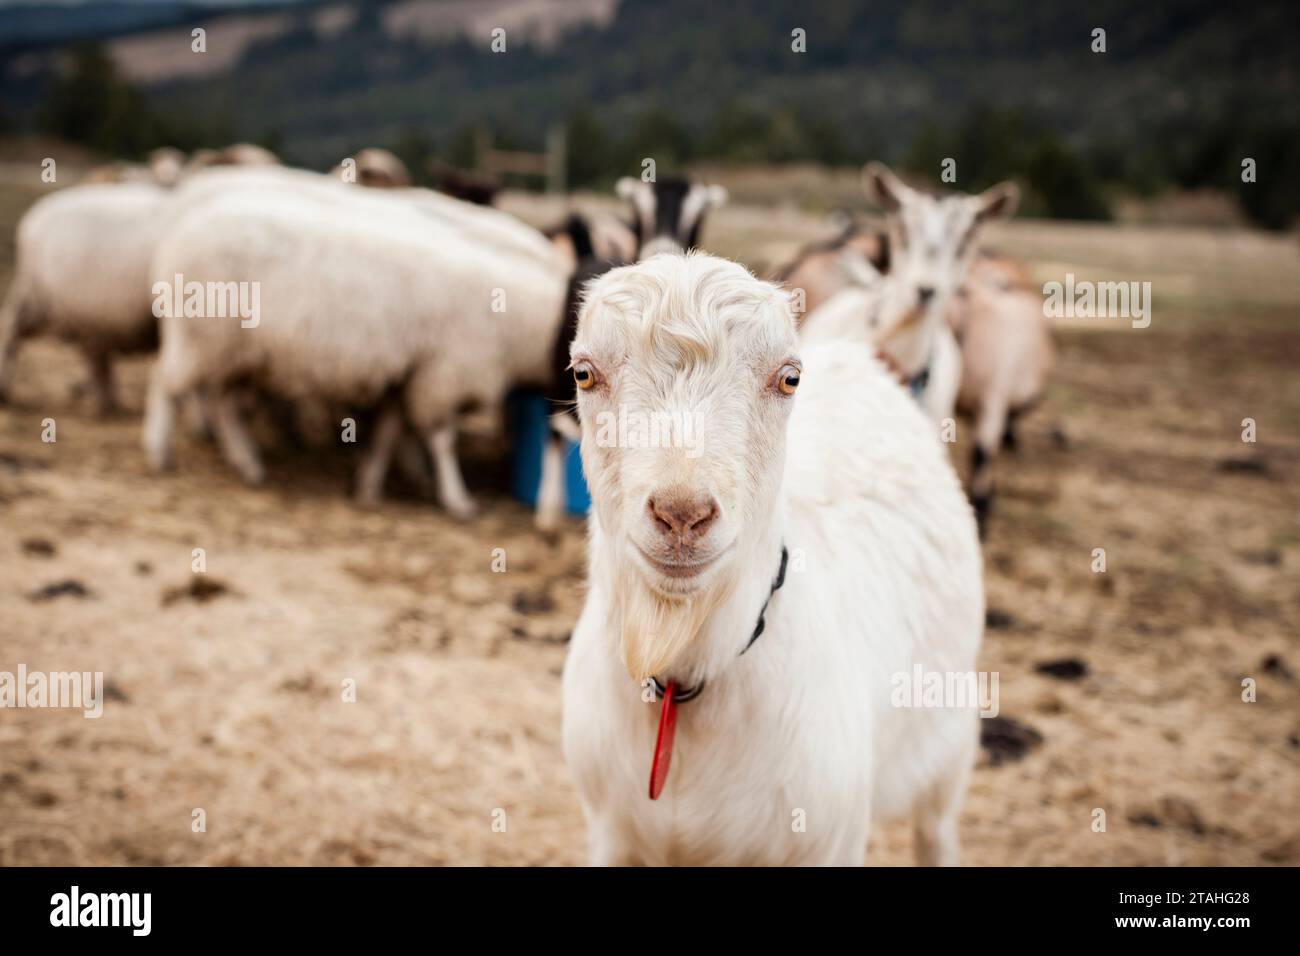 la capra da latte lamancha guarda nella macchina fotografica Foto Stock